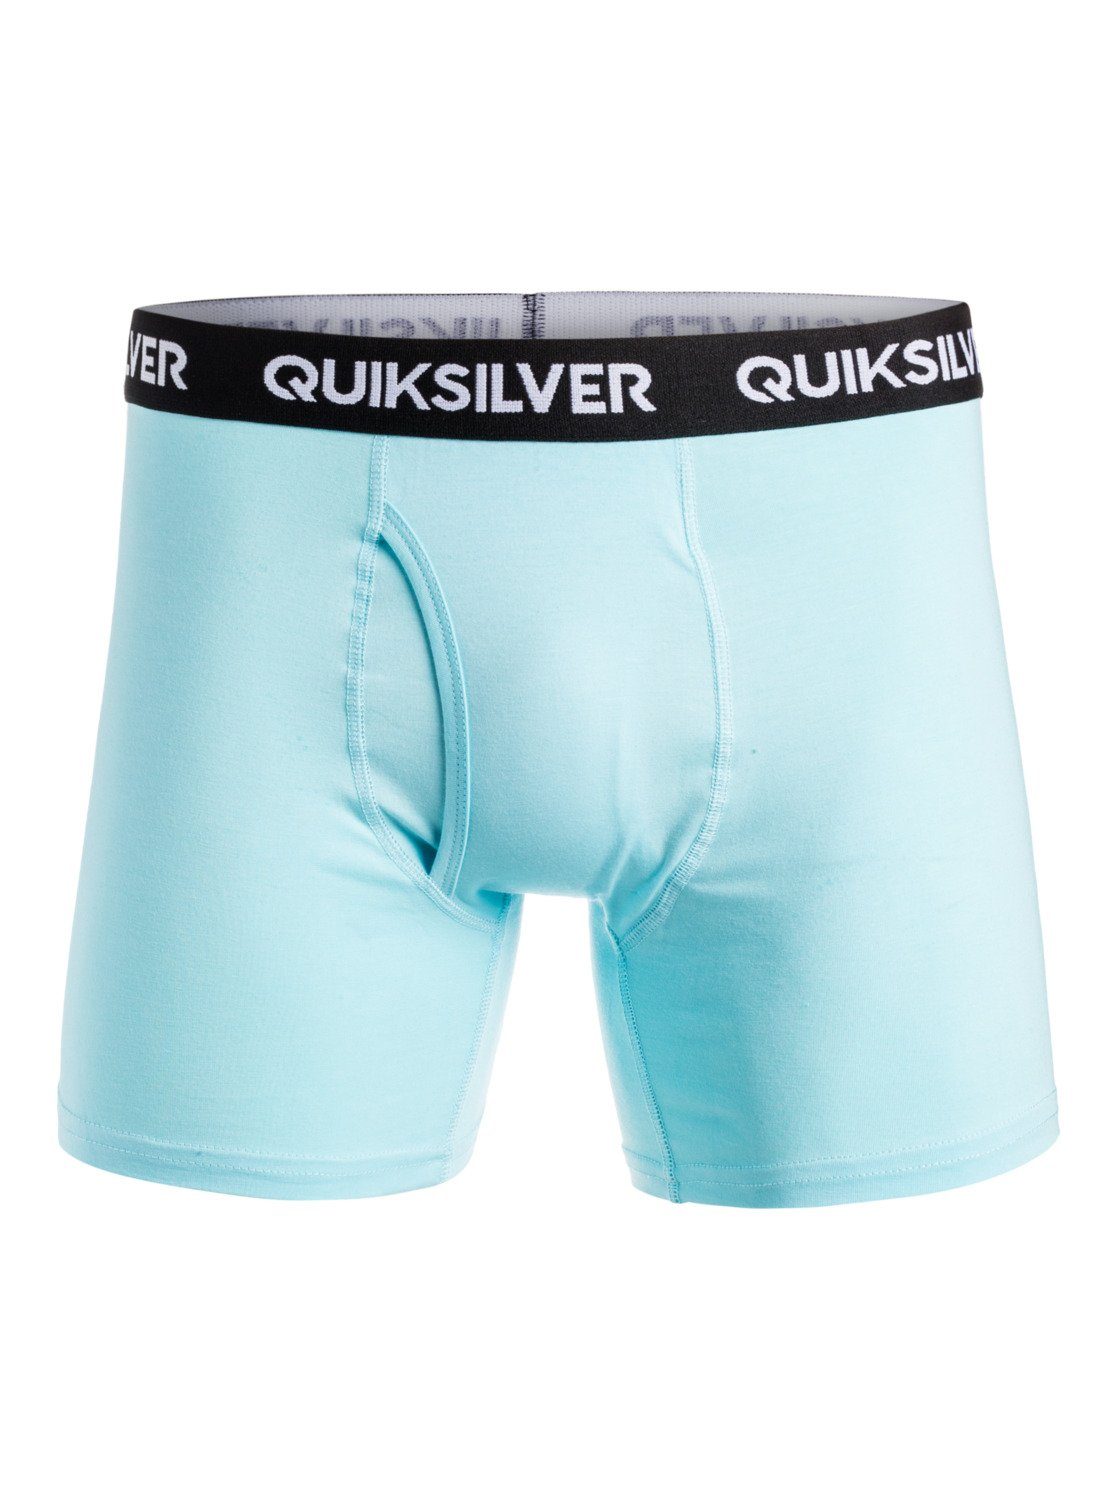 Quiksilver Boxer Core Super Soft Light Blue